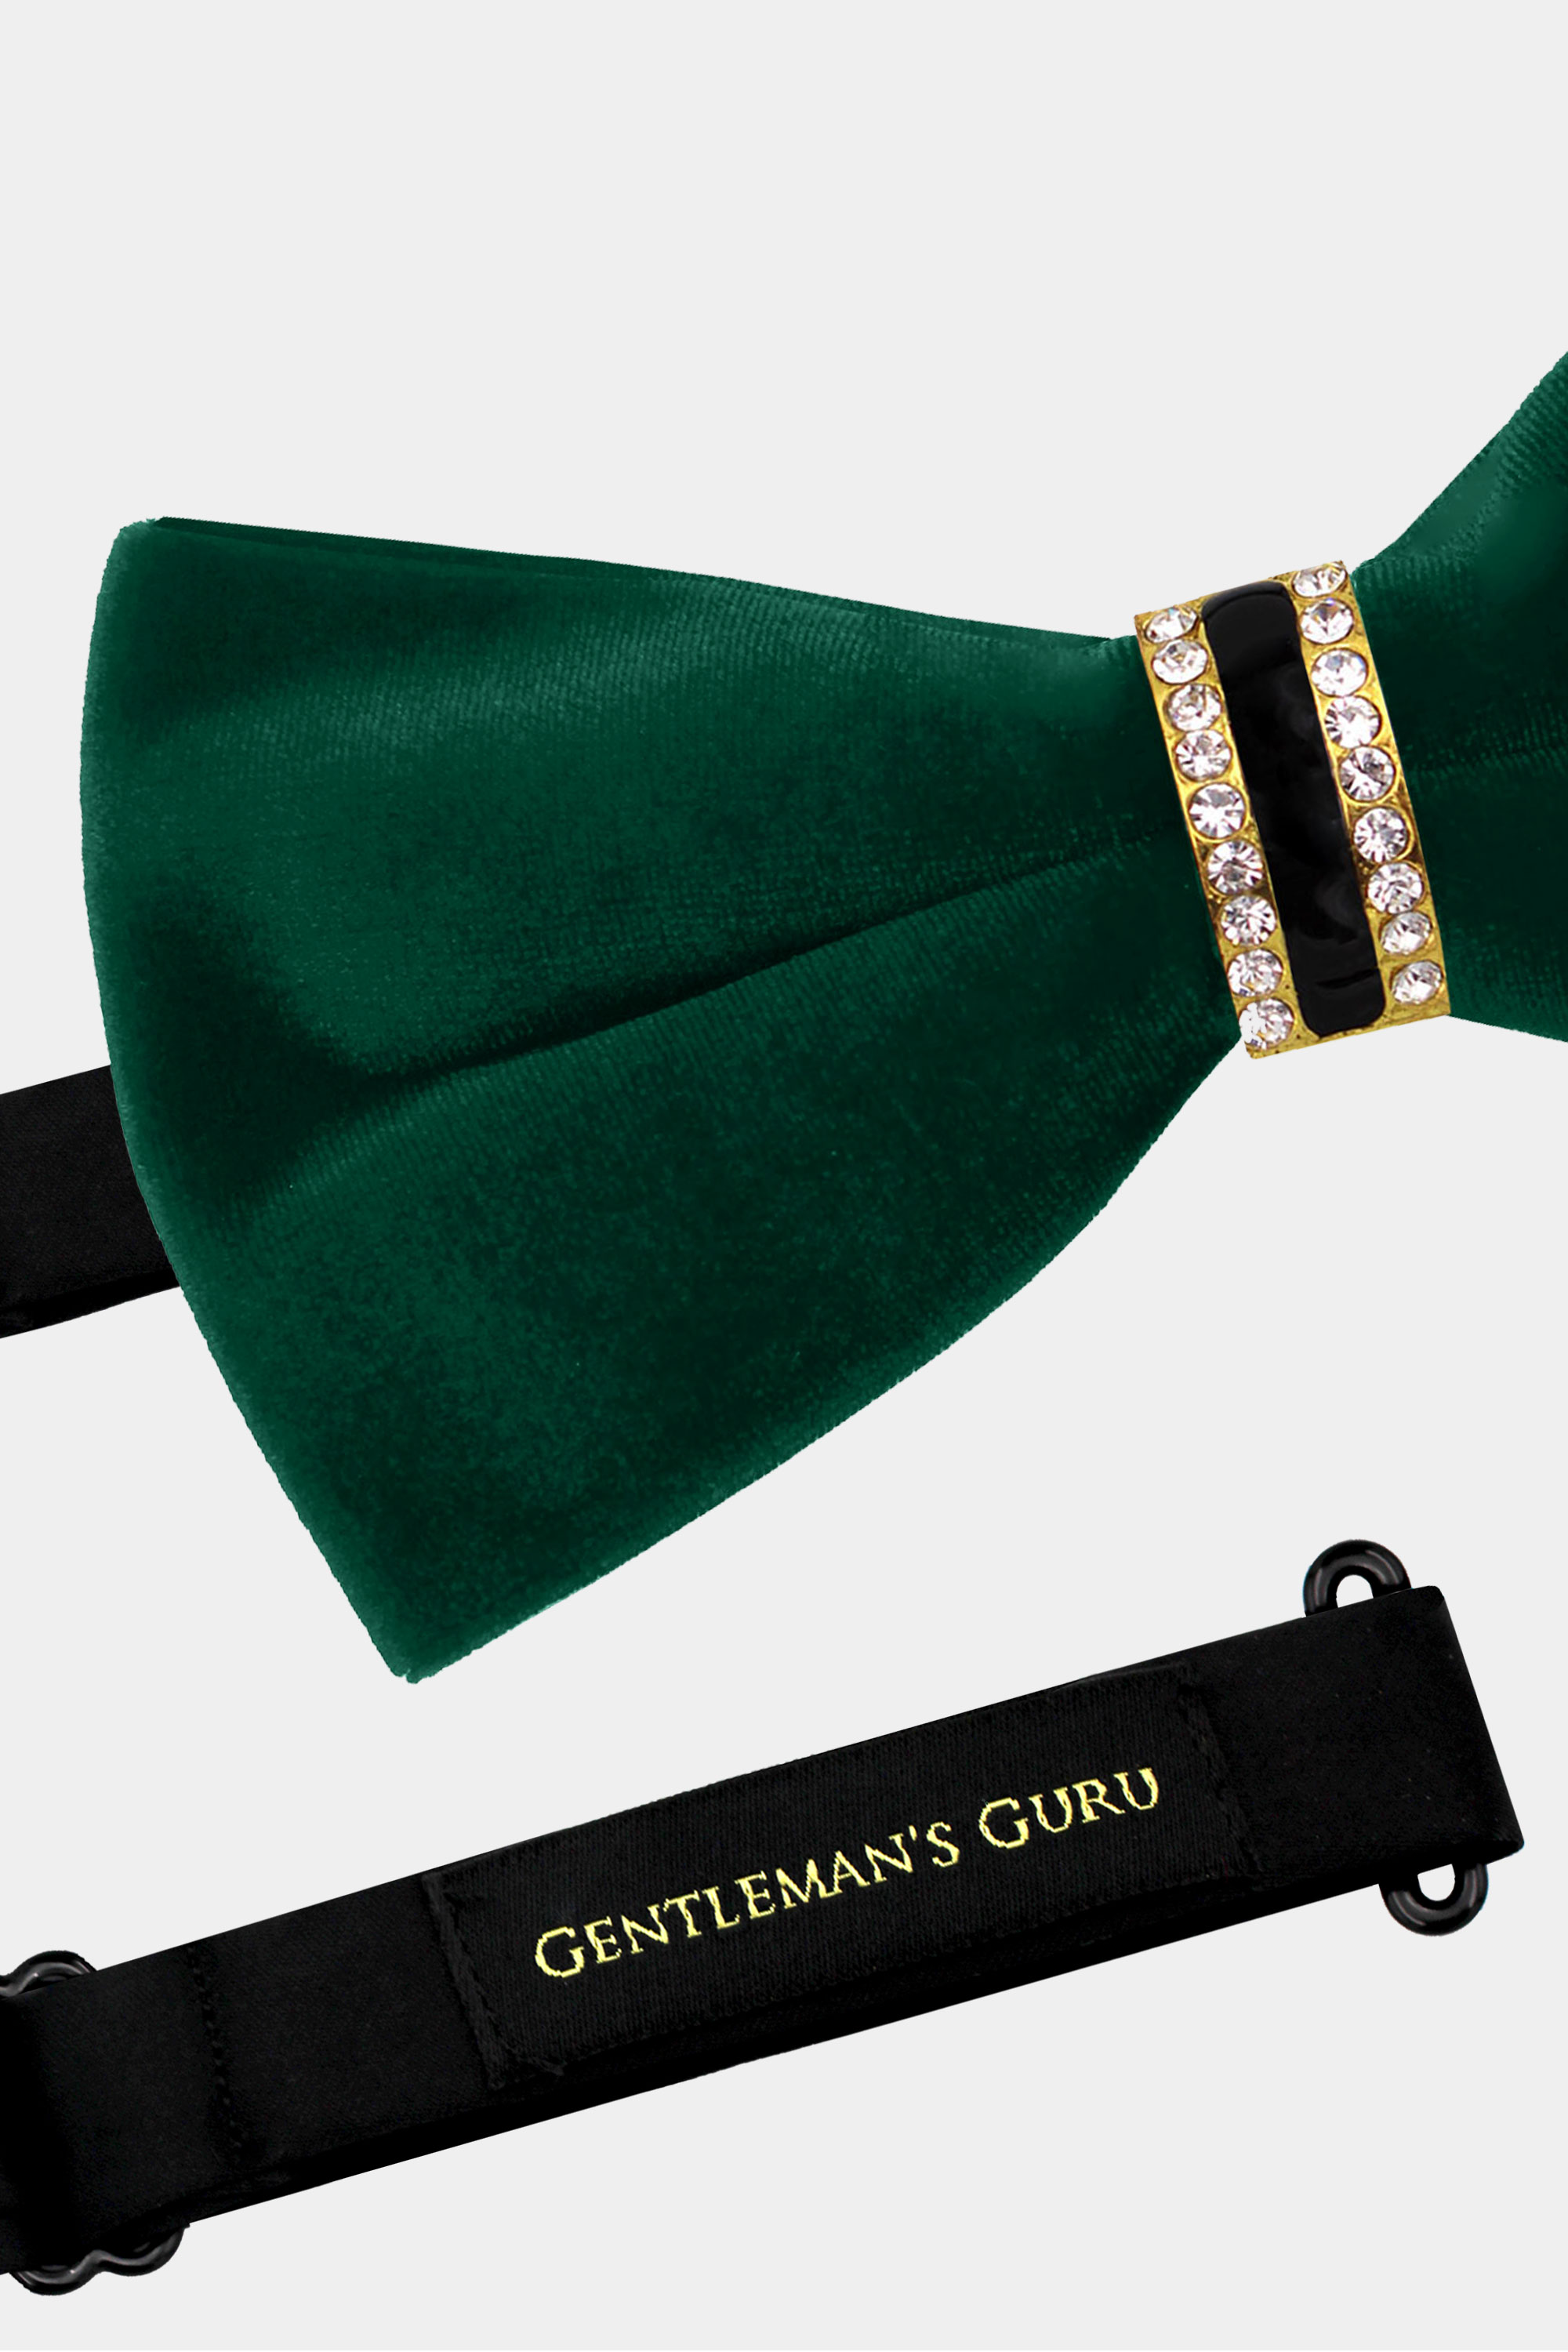 Crystal-Green-Velvet-Bow-Tie-from-Gentlemansguru.com